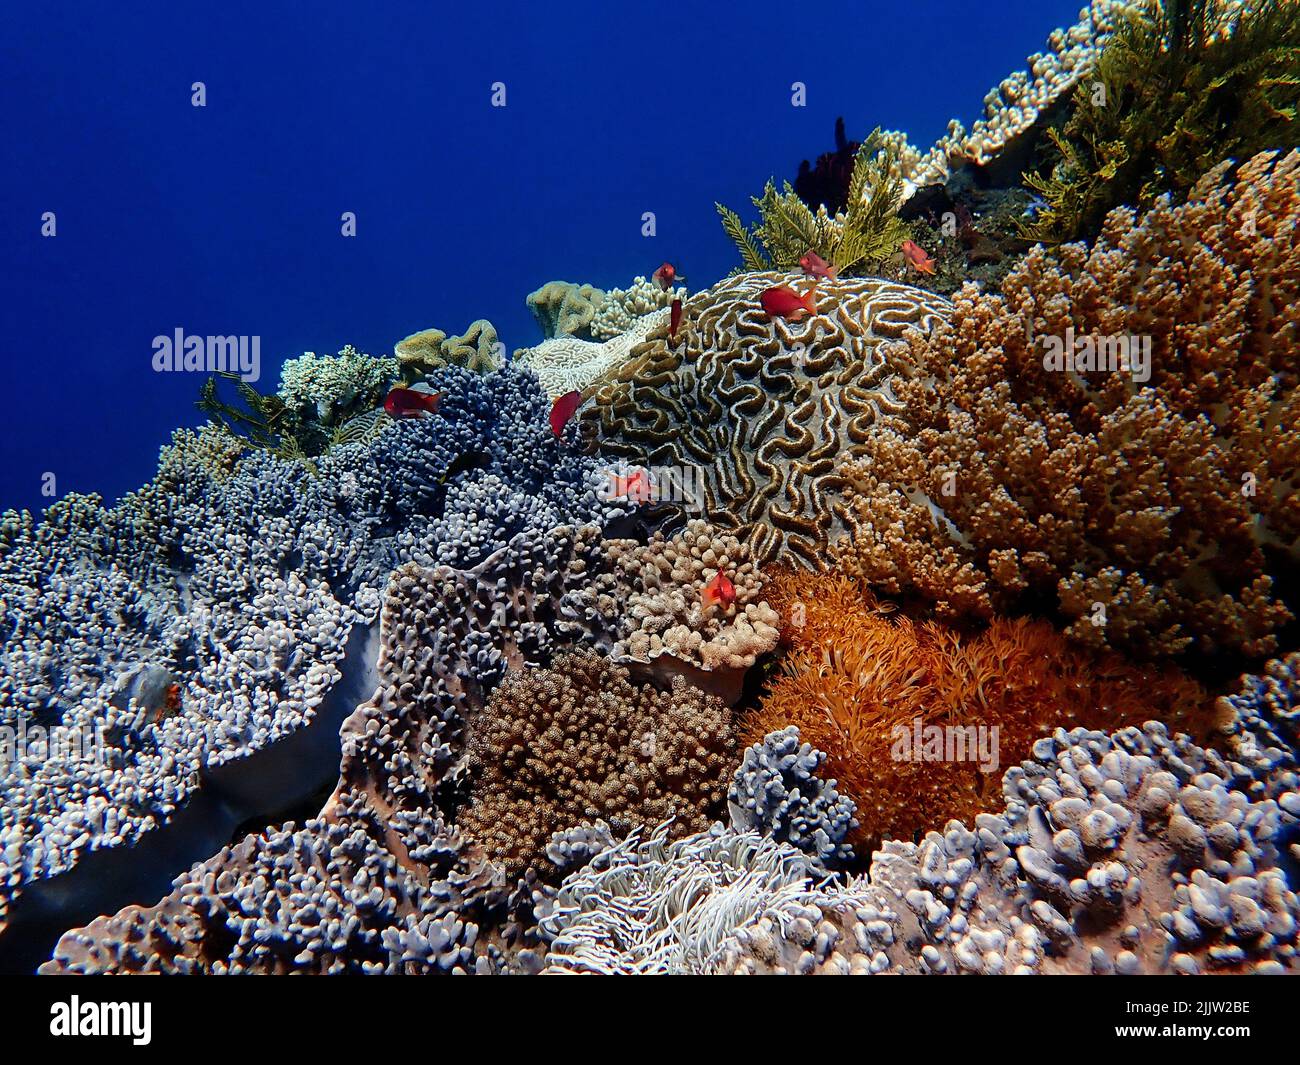 Indonesia Sumbawa - récif de corail coloré avec poissons tropicaux Banque D'Images